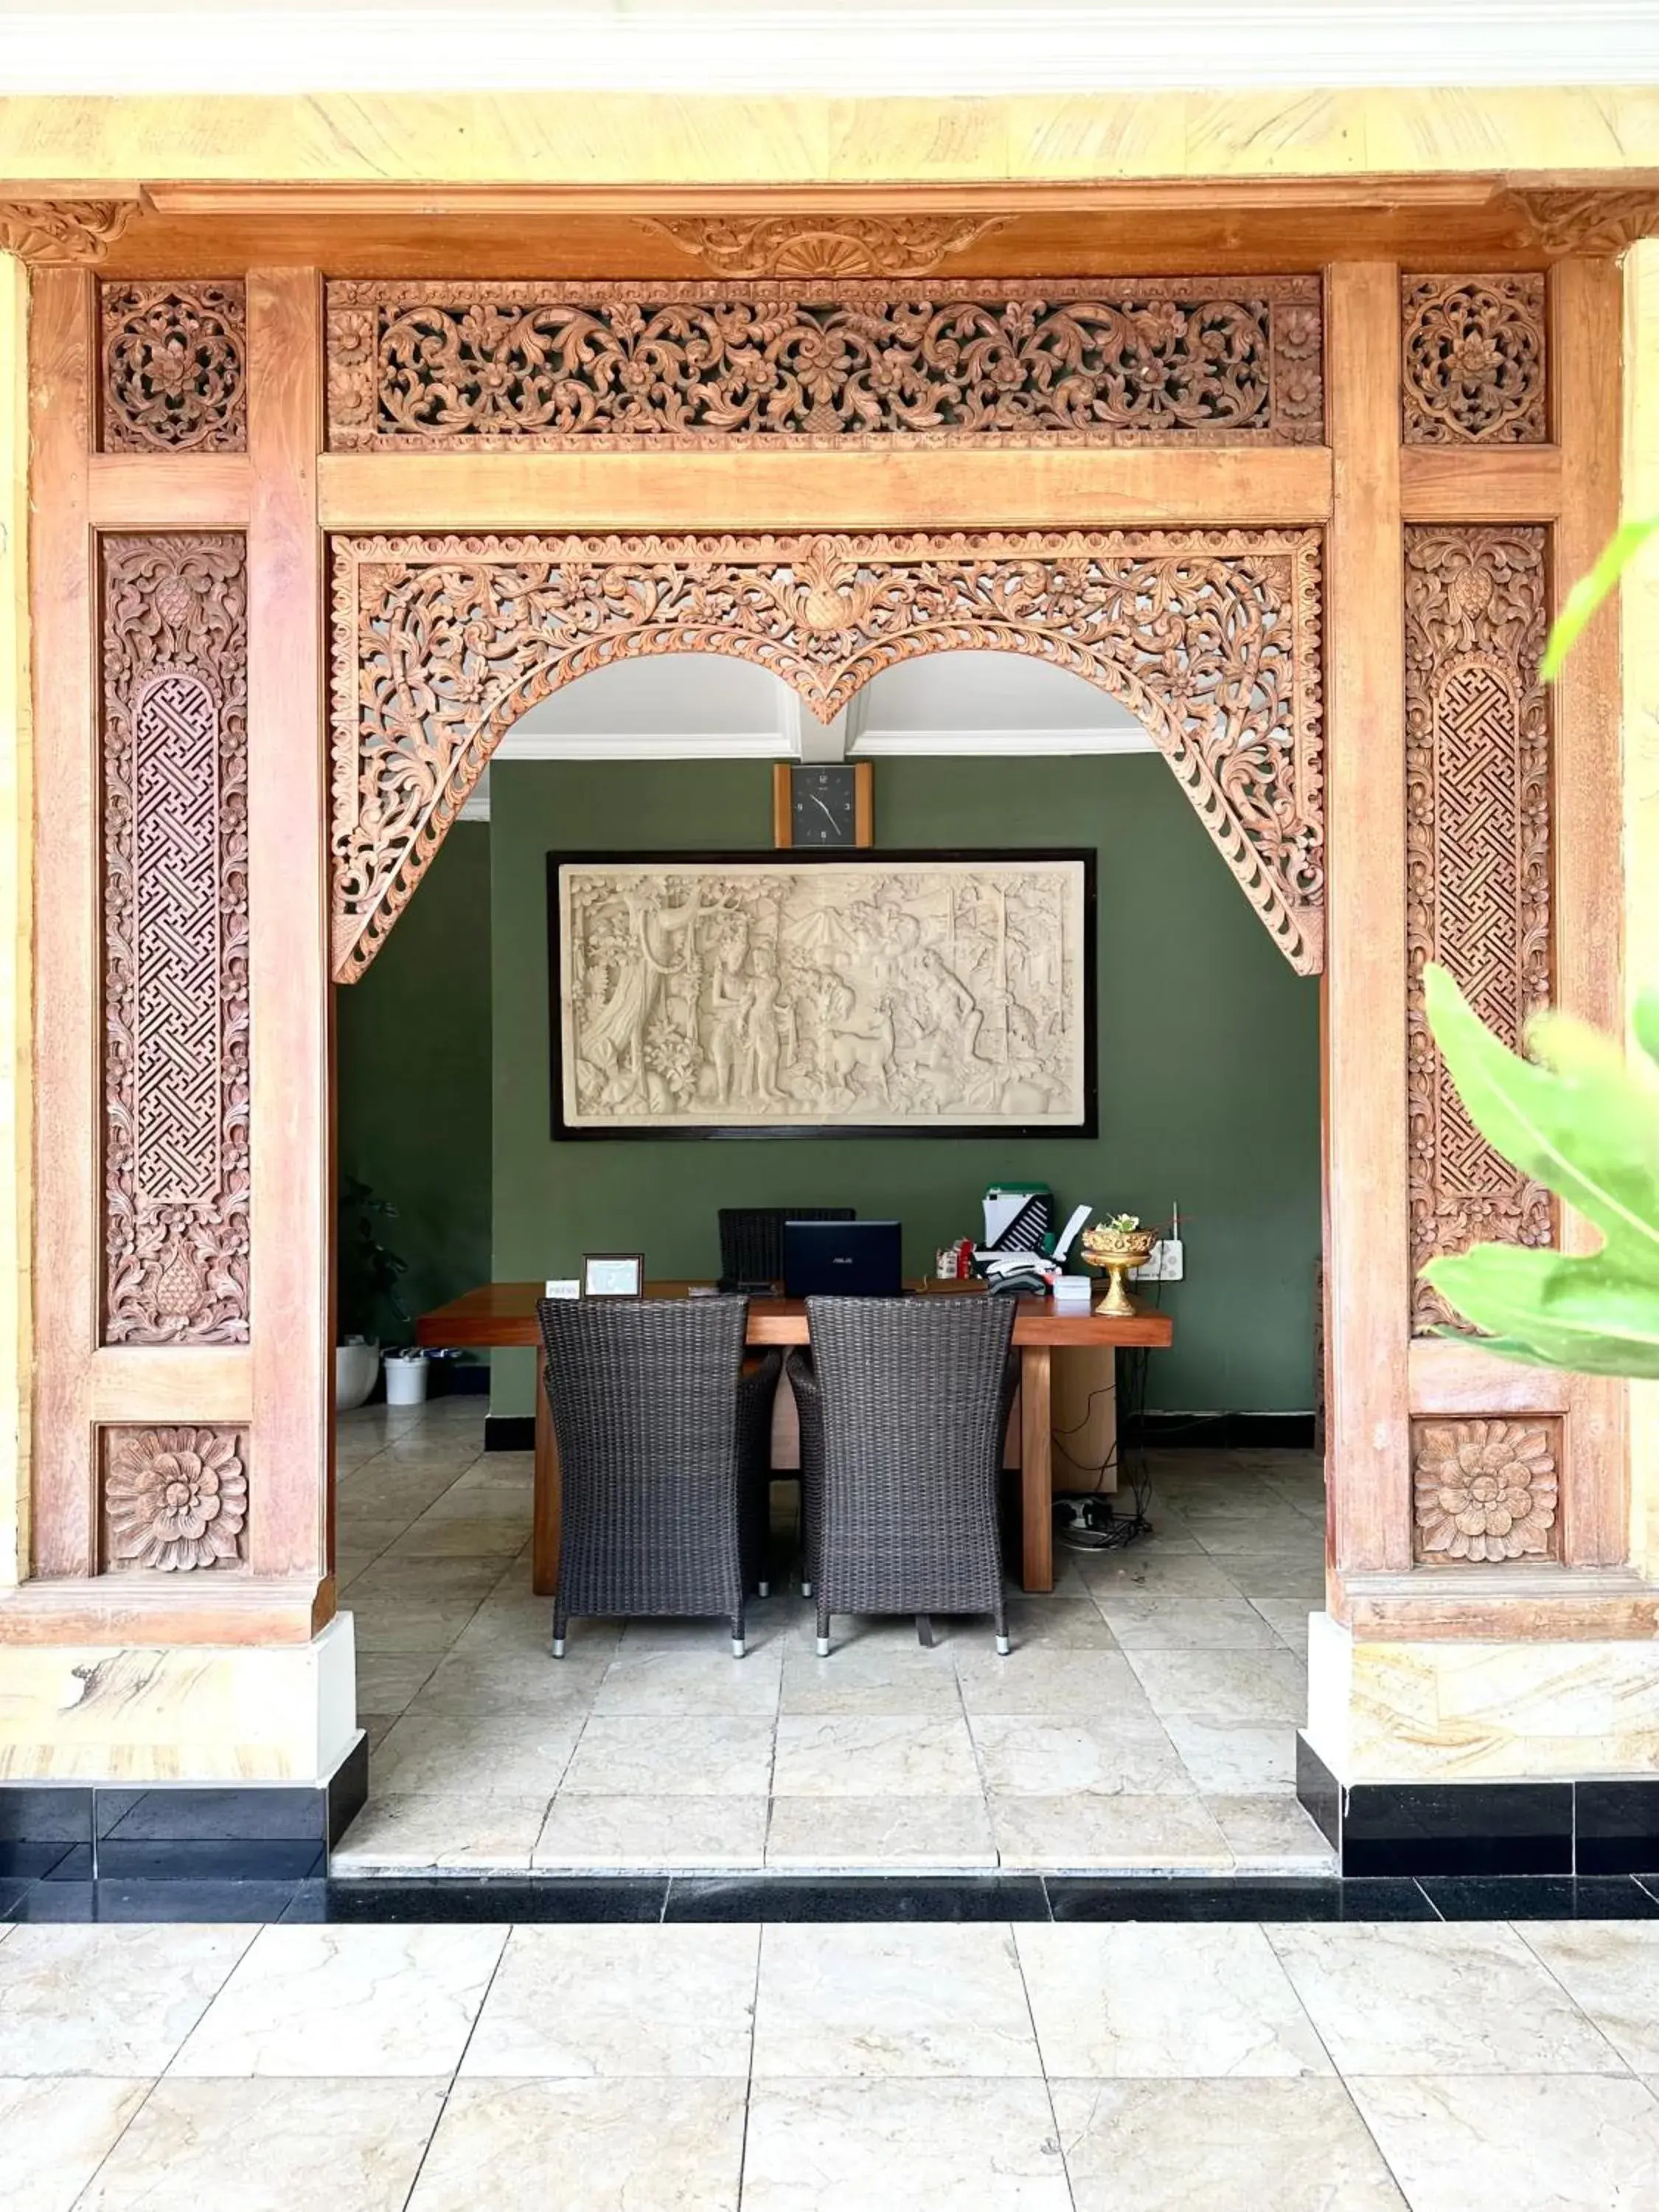 Lobby or reception, Lobby/Reception in Radha Bali Hotel